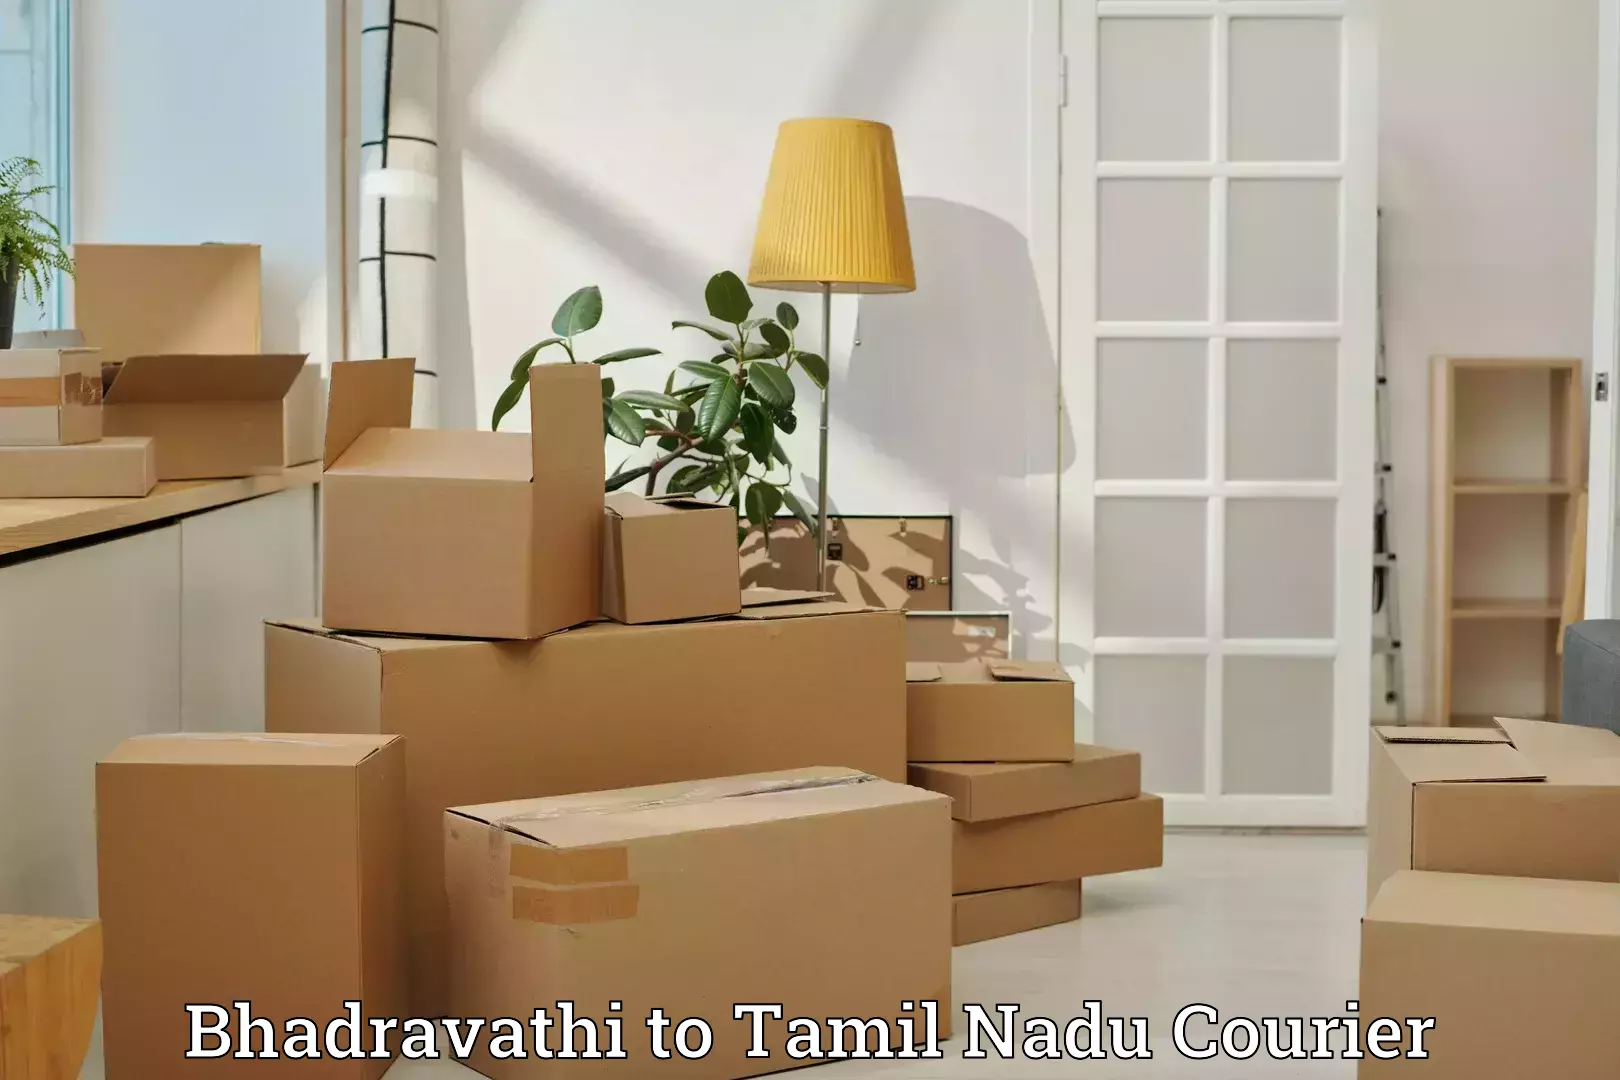 Urgent luggage shipment Bhadravathi to Sathyamangalam